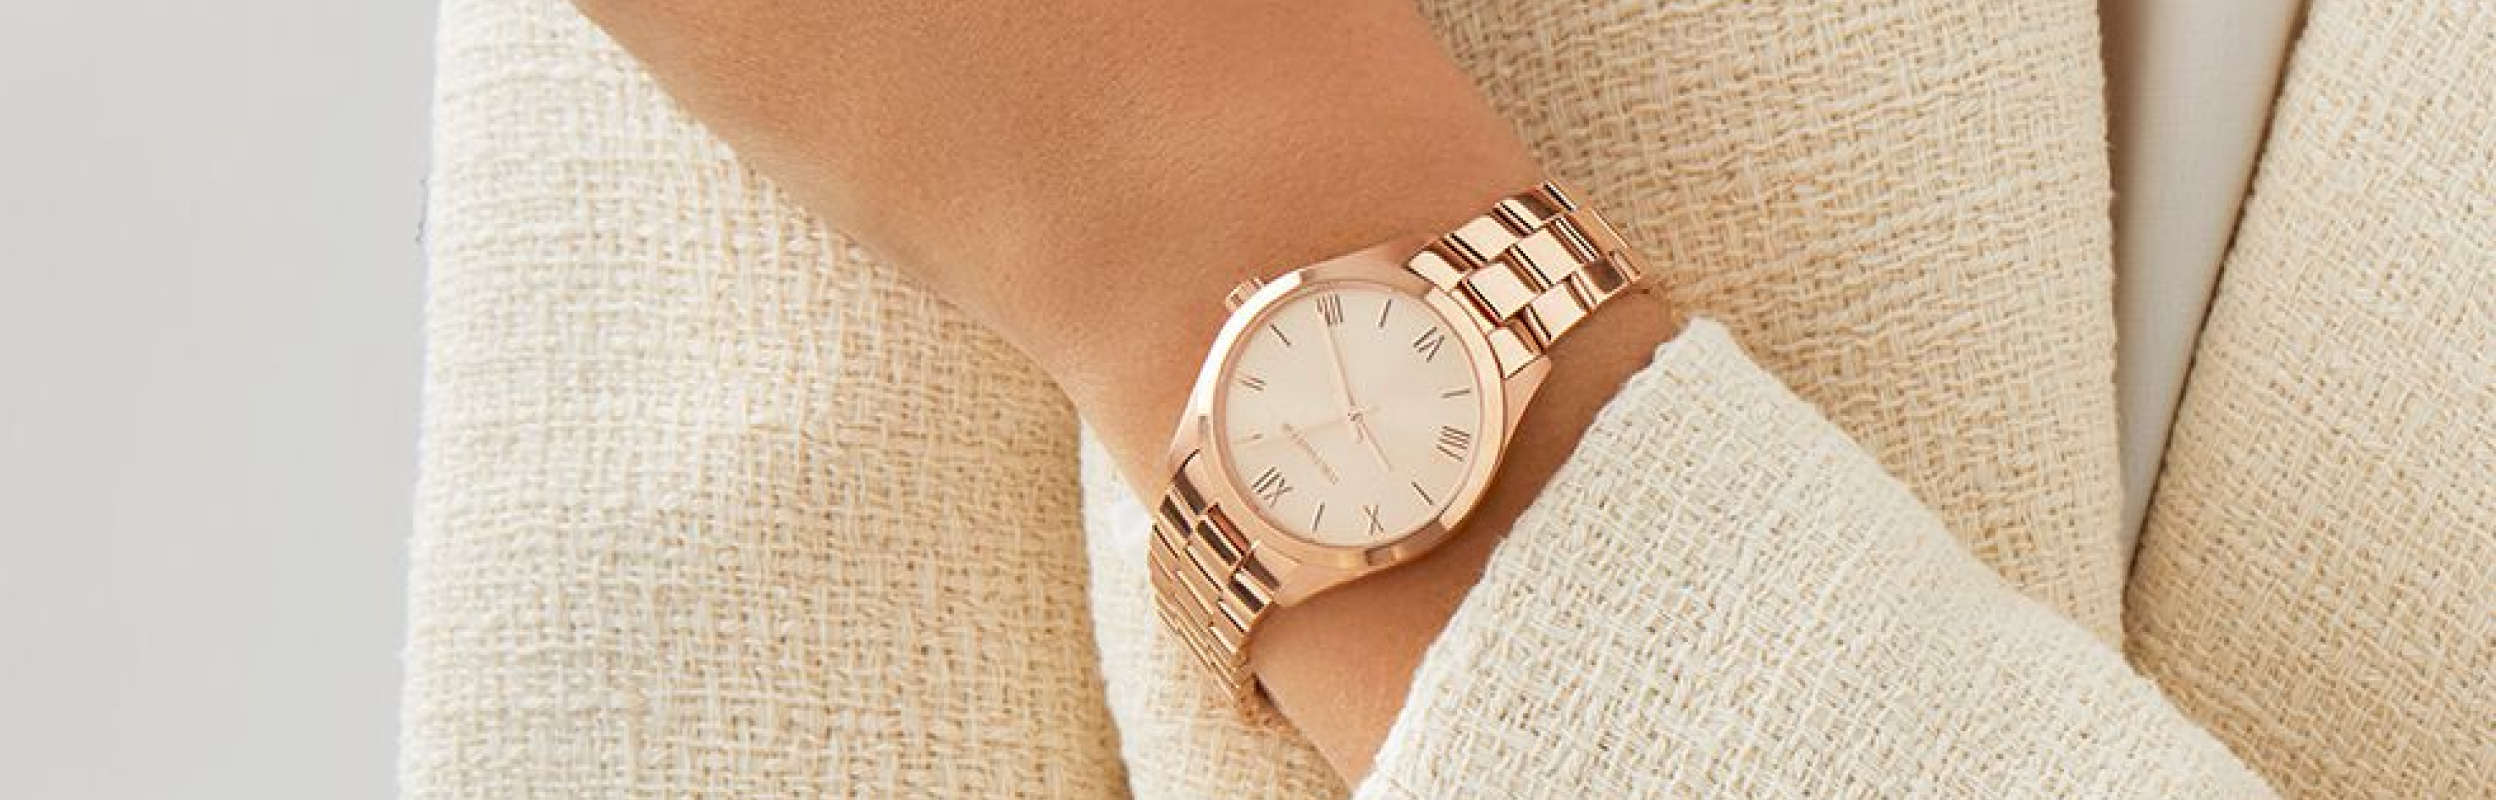 Femme portant une montre en or rose